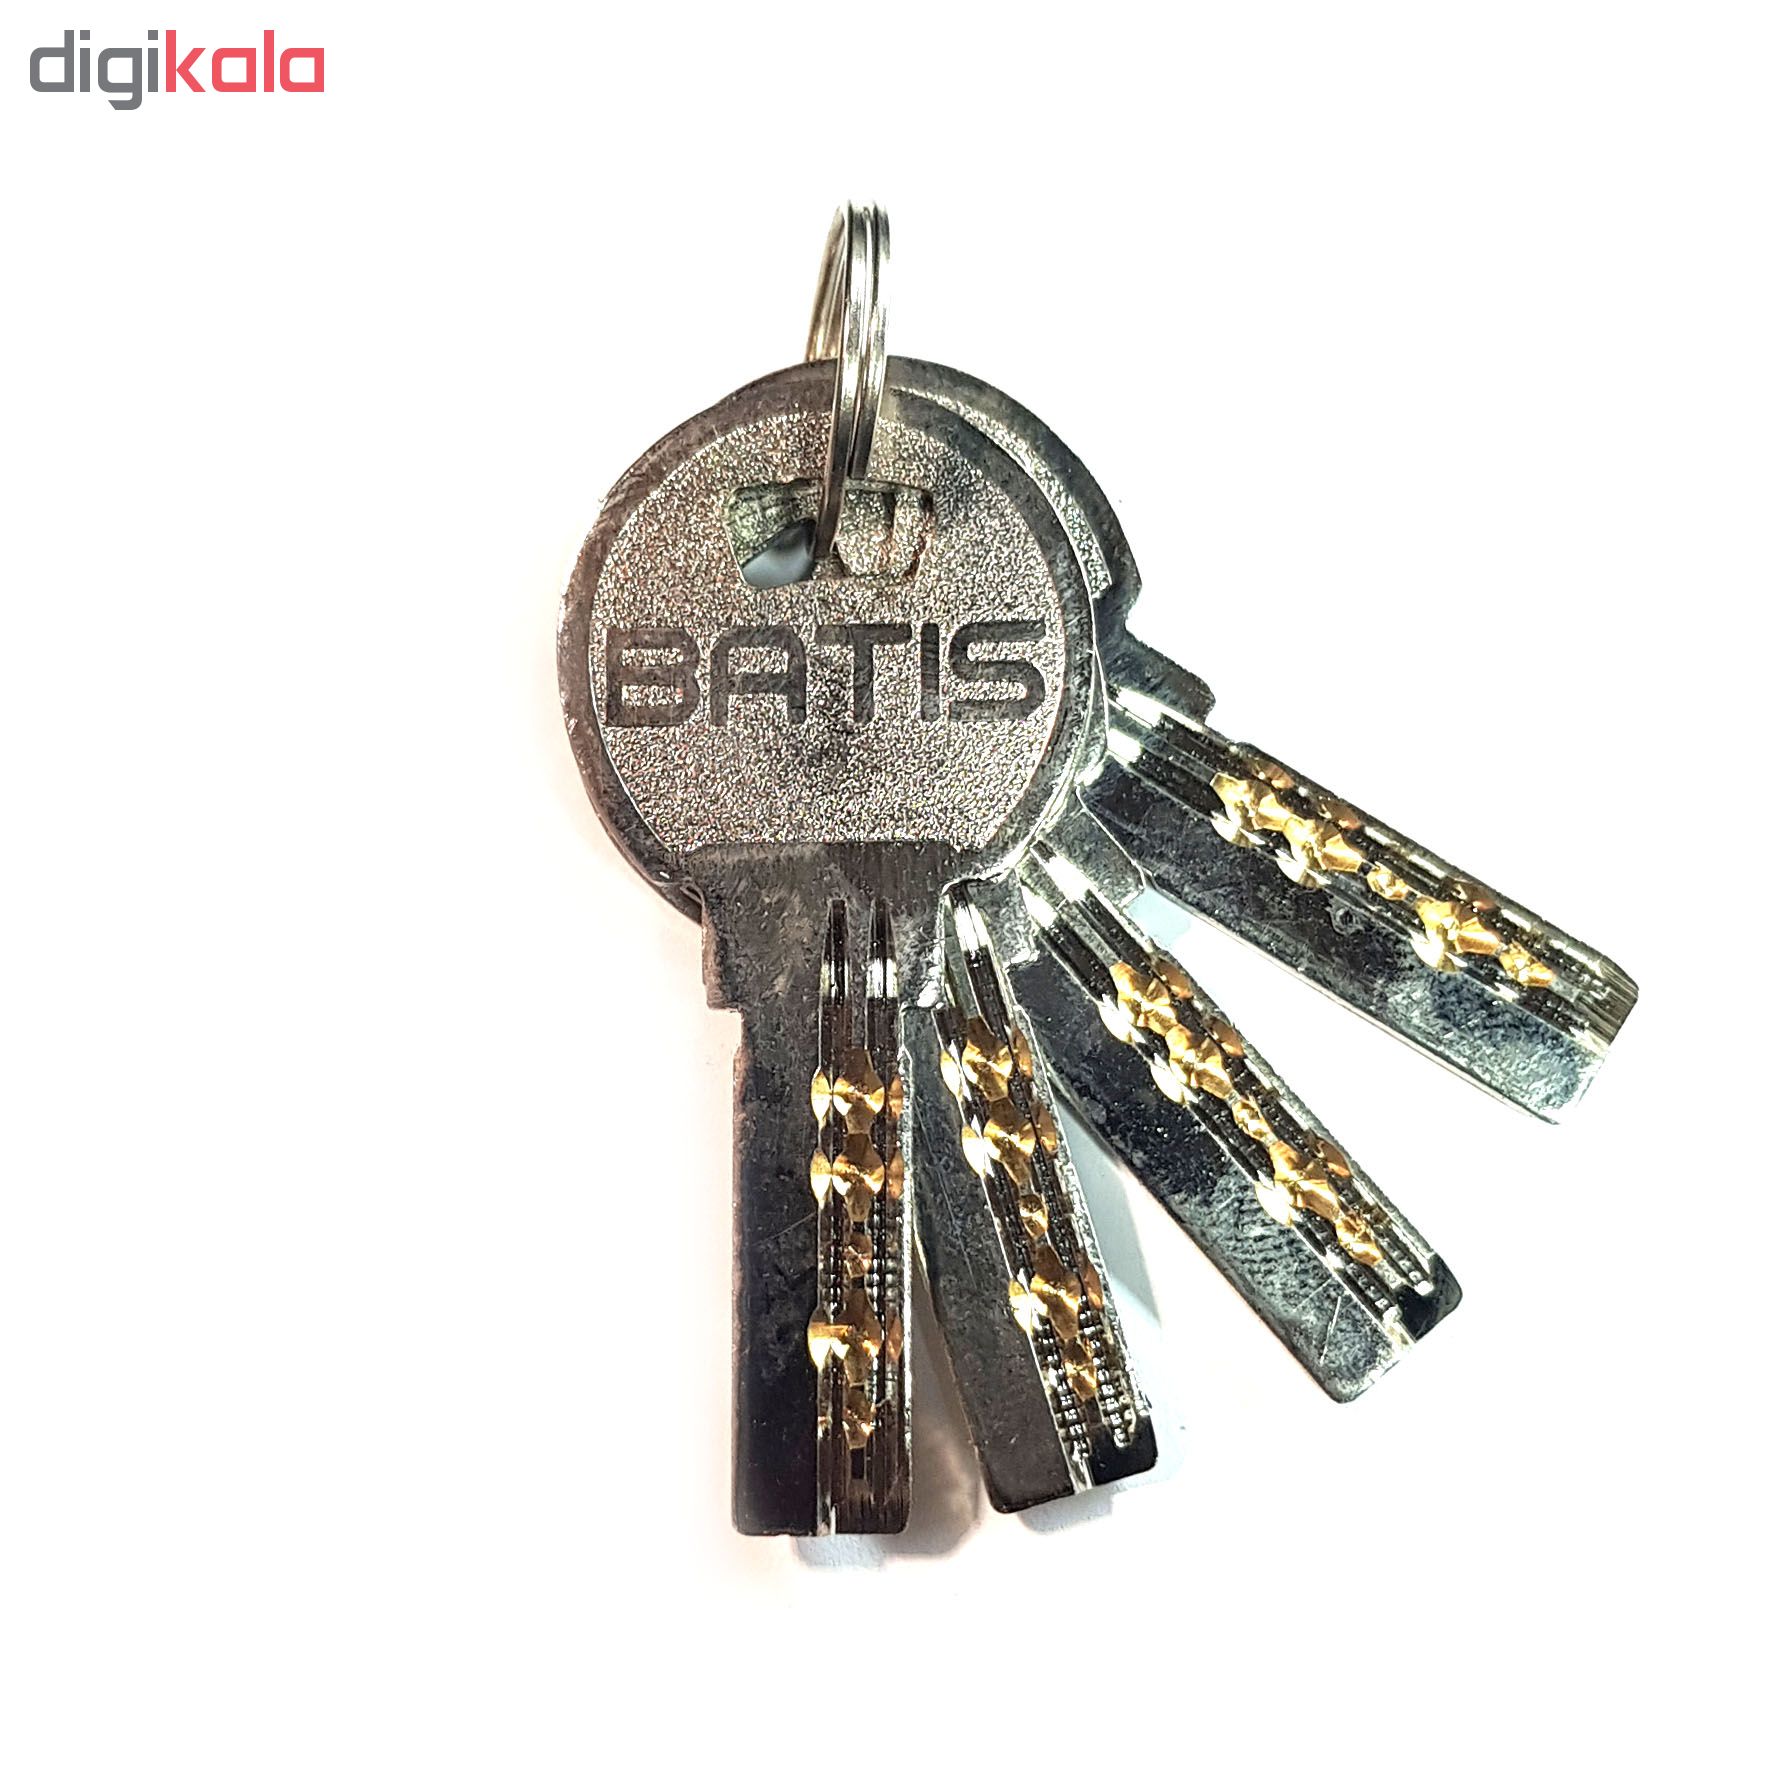 قفل کتابی باتیس مدل BAIR80025